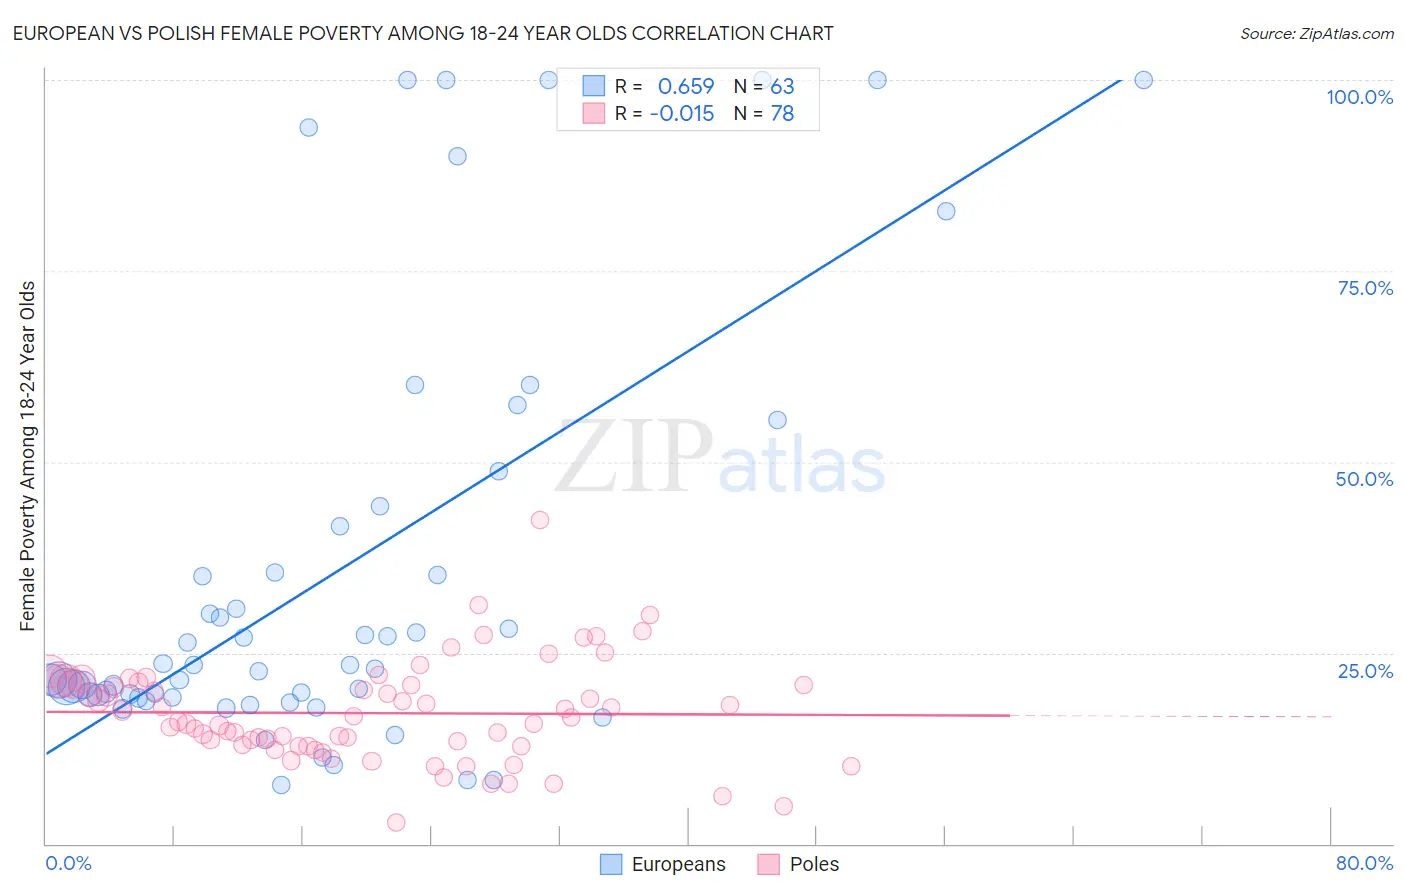 European vs Polish Female Poverty Among 18-24 Year Olds